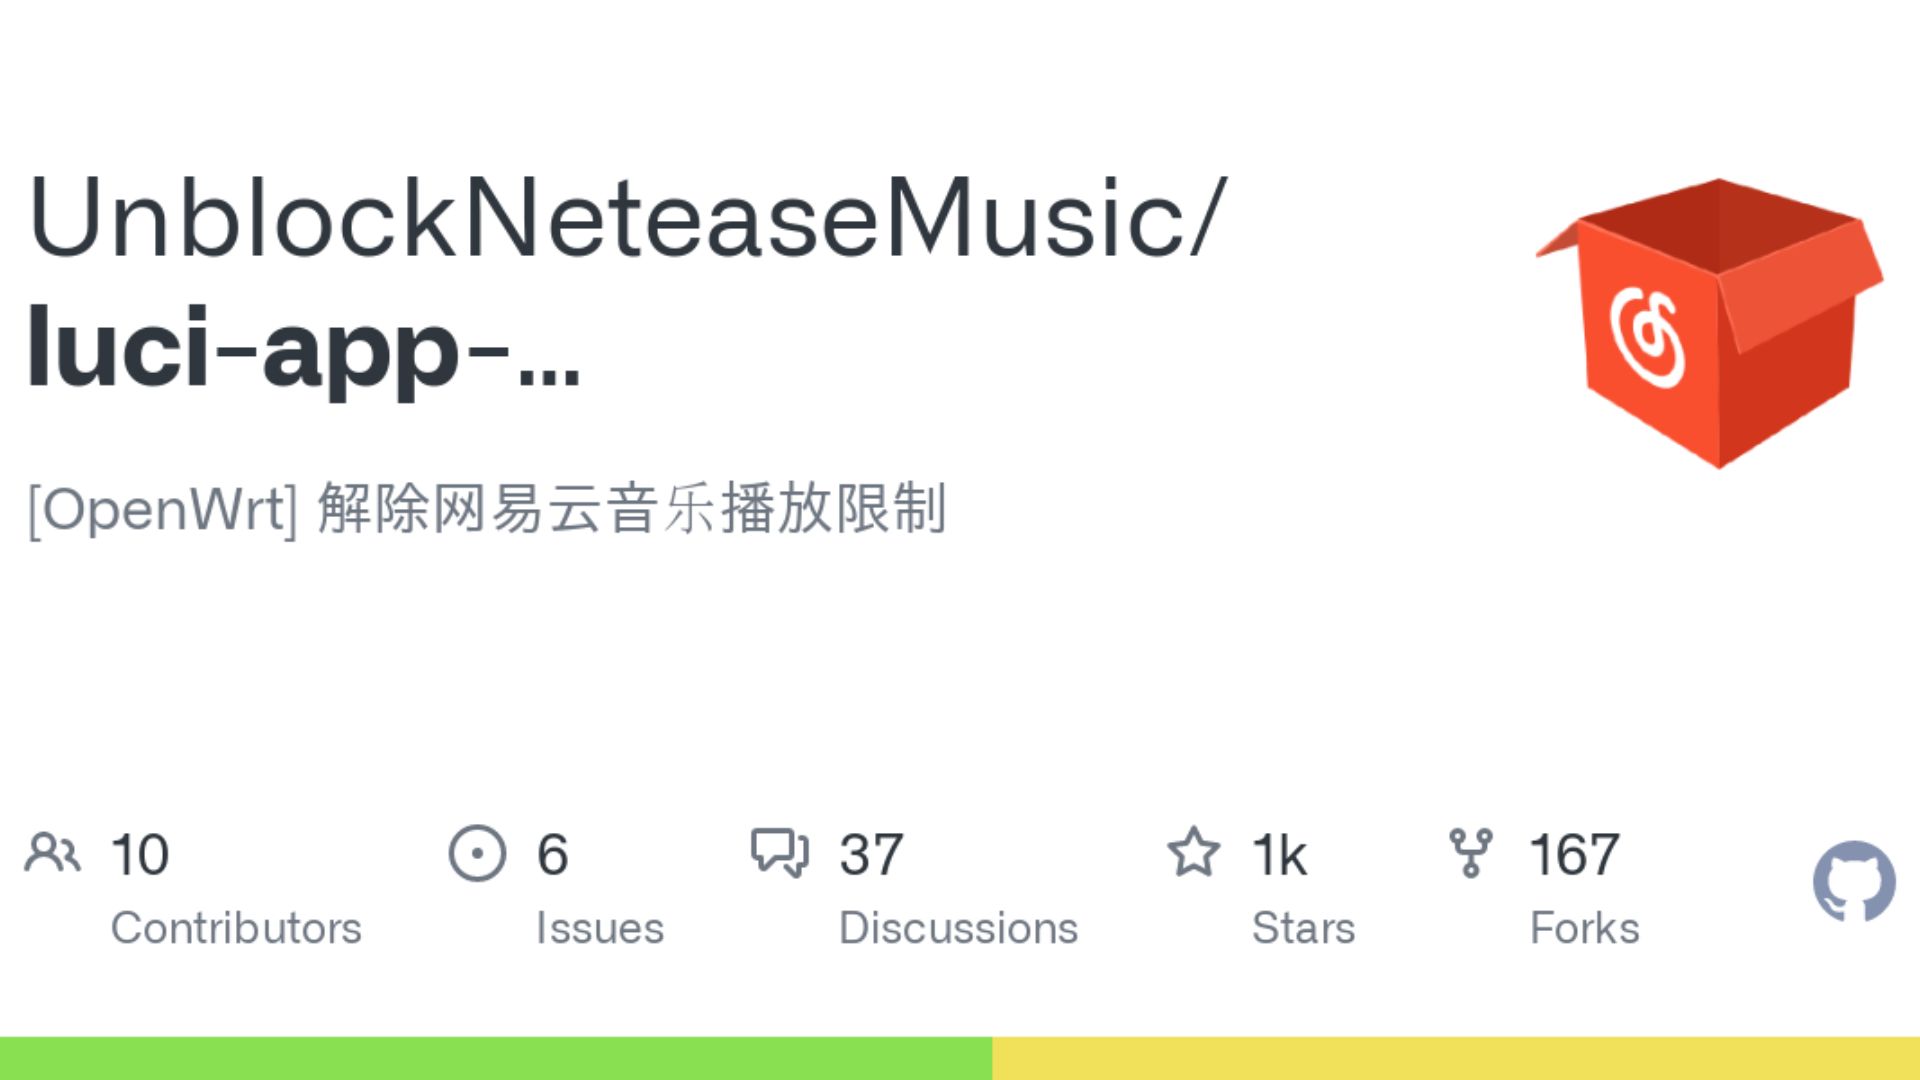 Netease Music Github Post